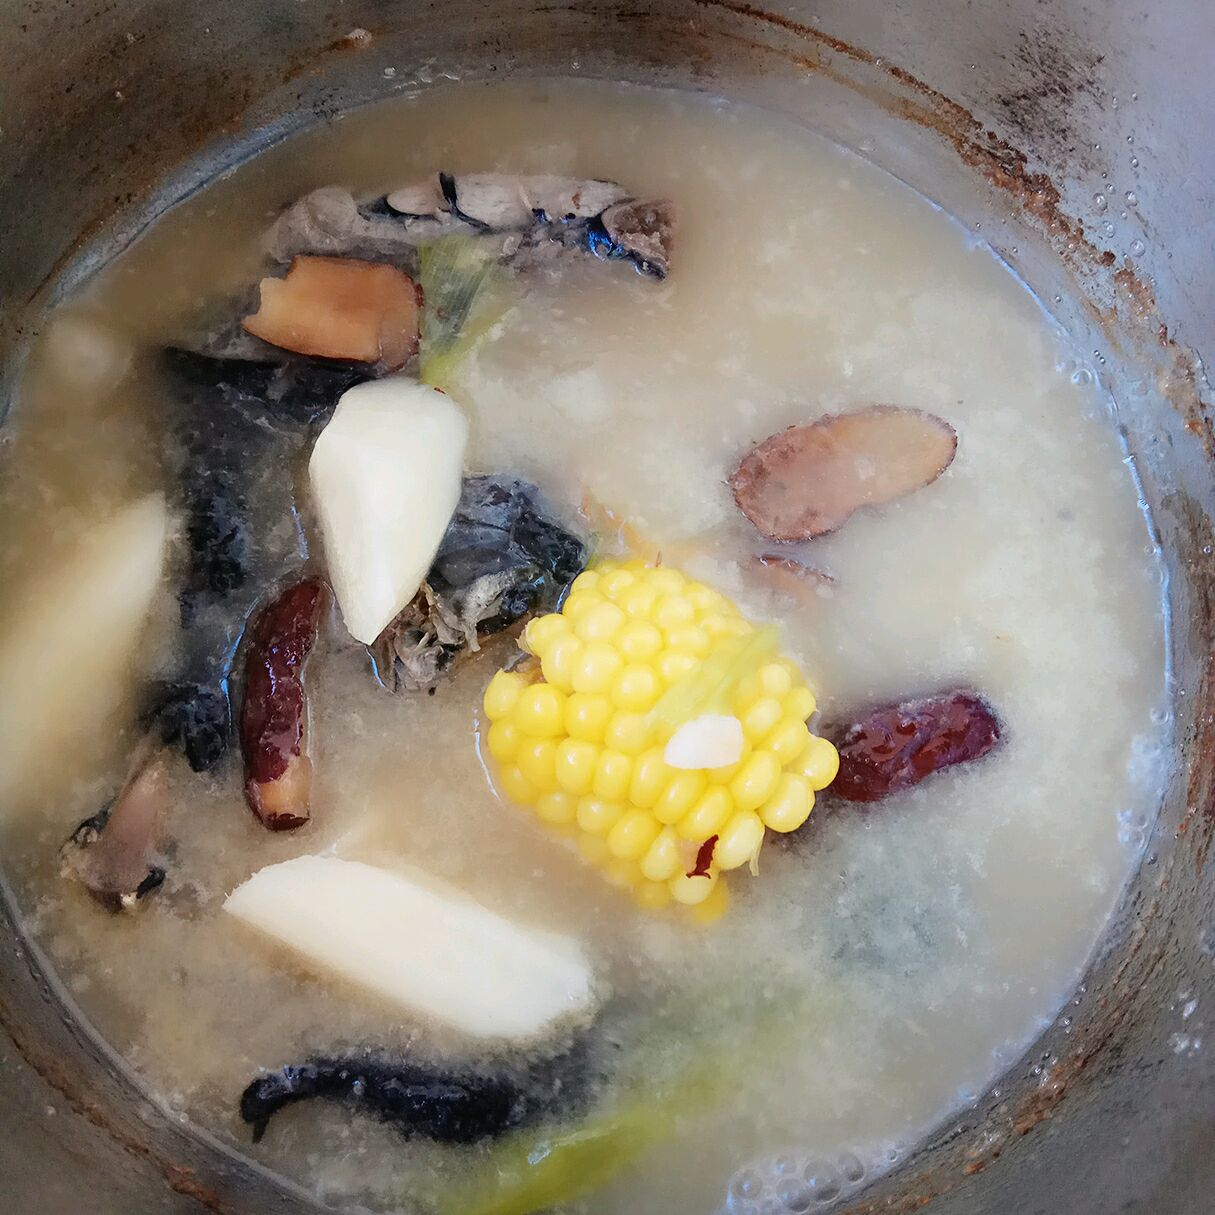 排骨山药玉米汤怎么做_排骨山药玉米汤的做法_木木在厨房_豆果美食